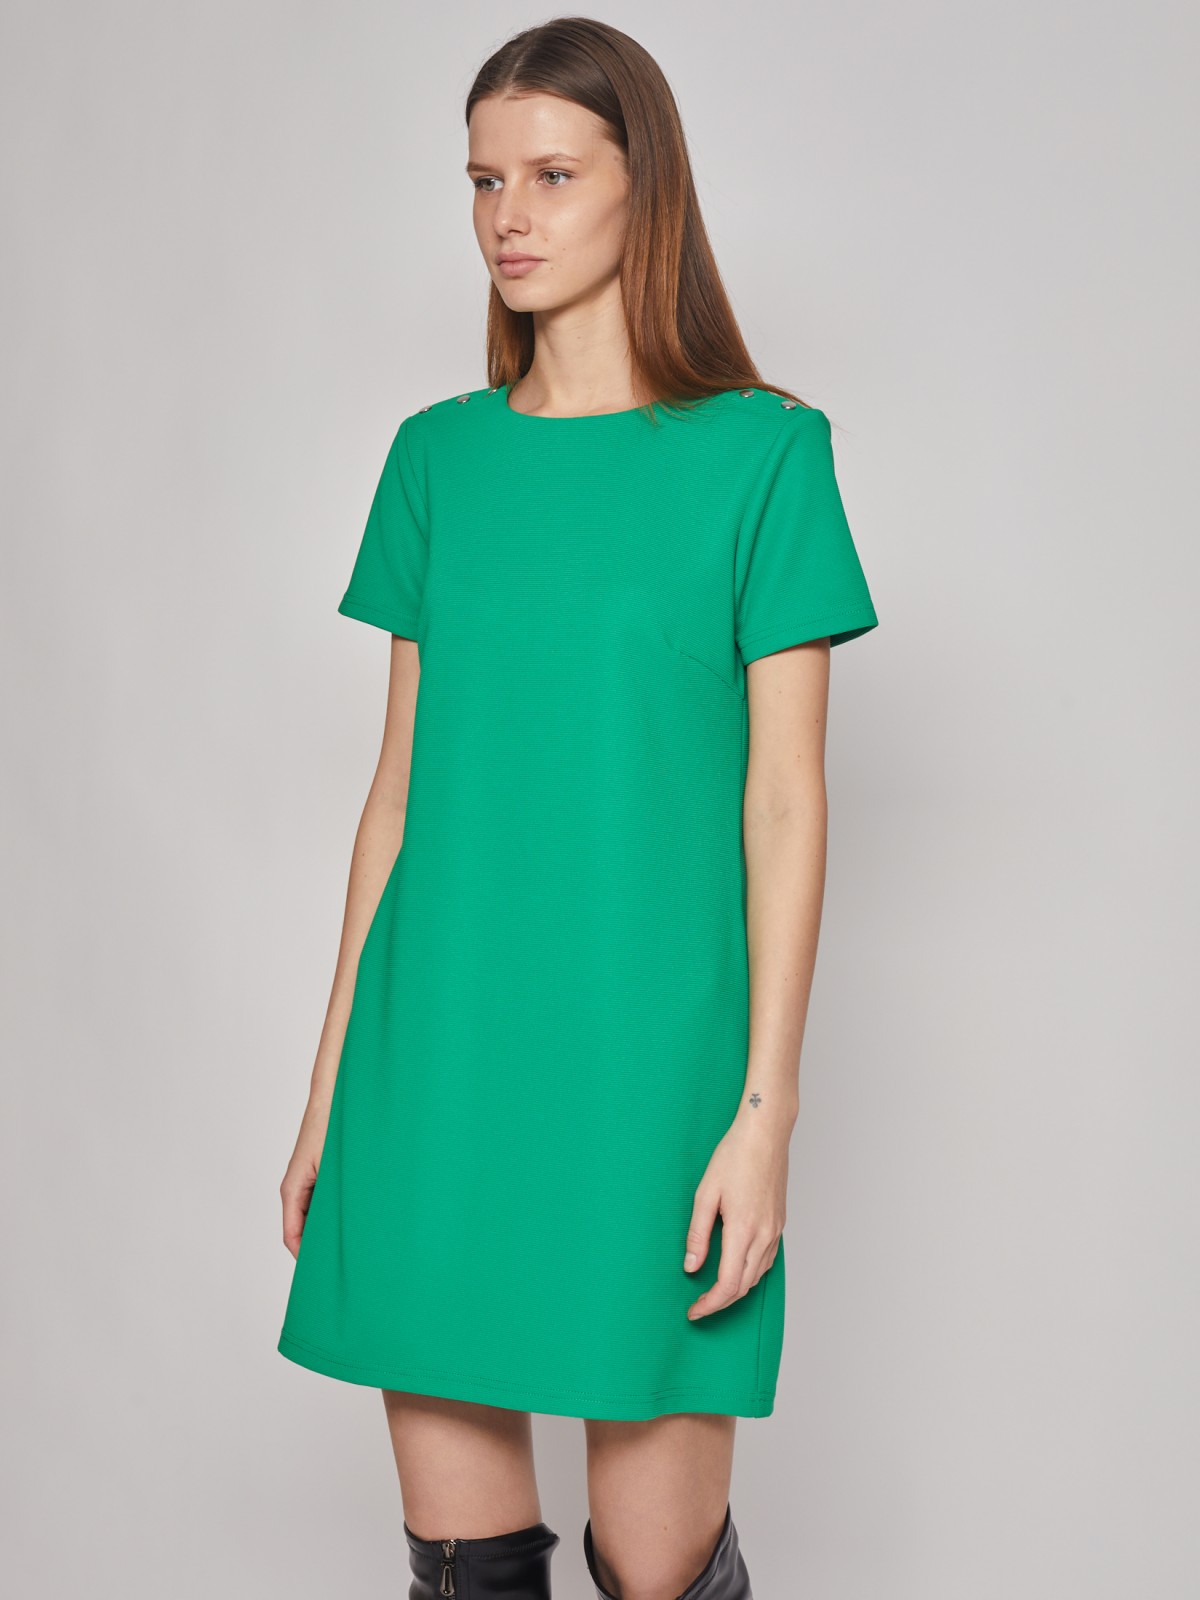 Платье кроеное zolla 02312819F032, цвет зеленый, размер S - фото 4